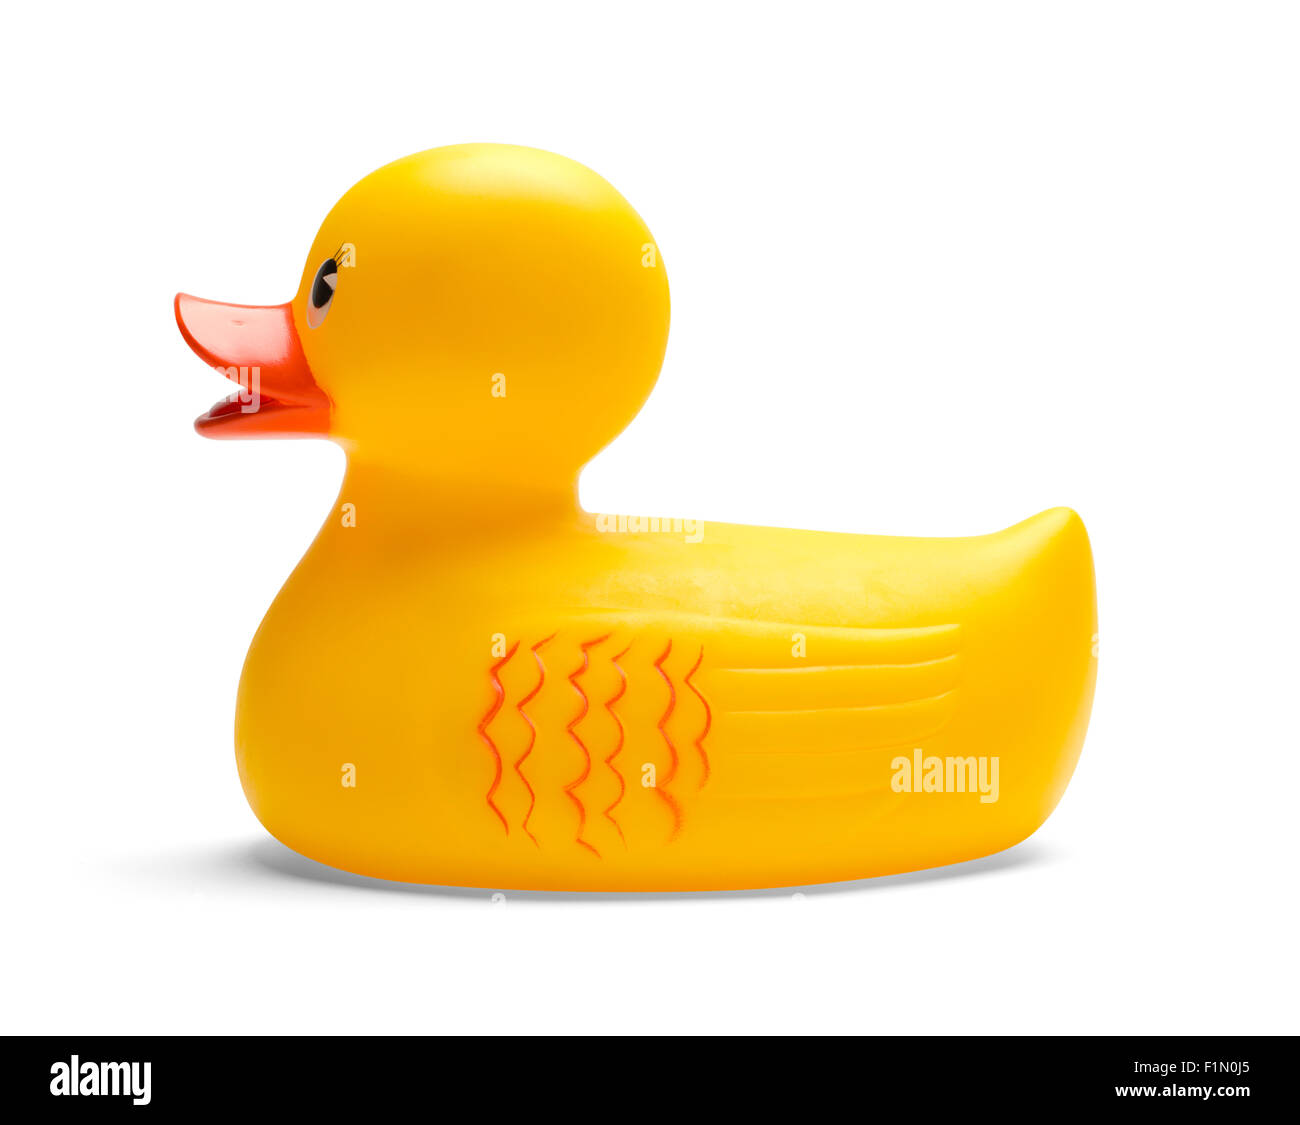 Toy Rubber Duck isolato su uno sfondo bianco. Foto Stock